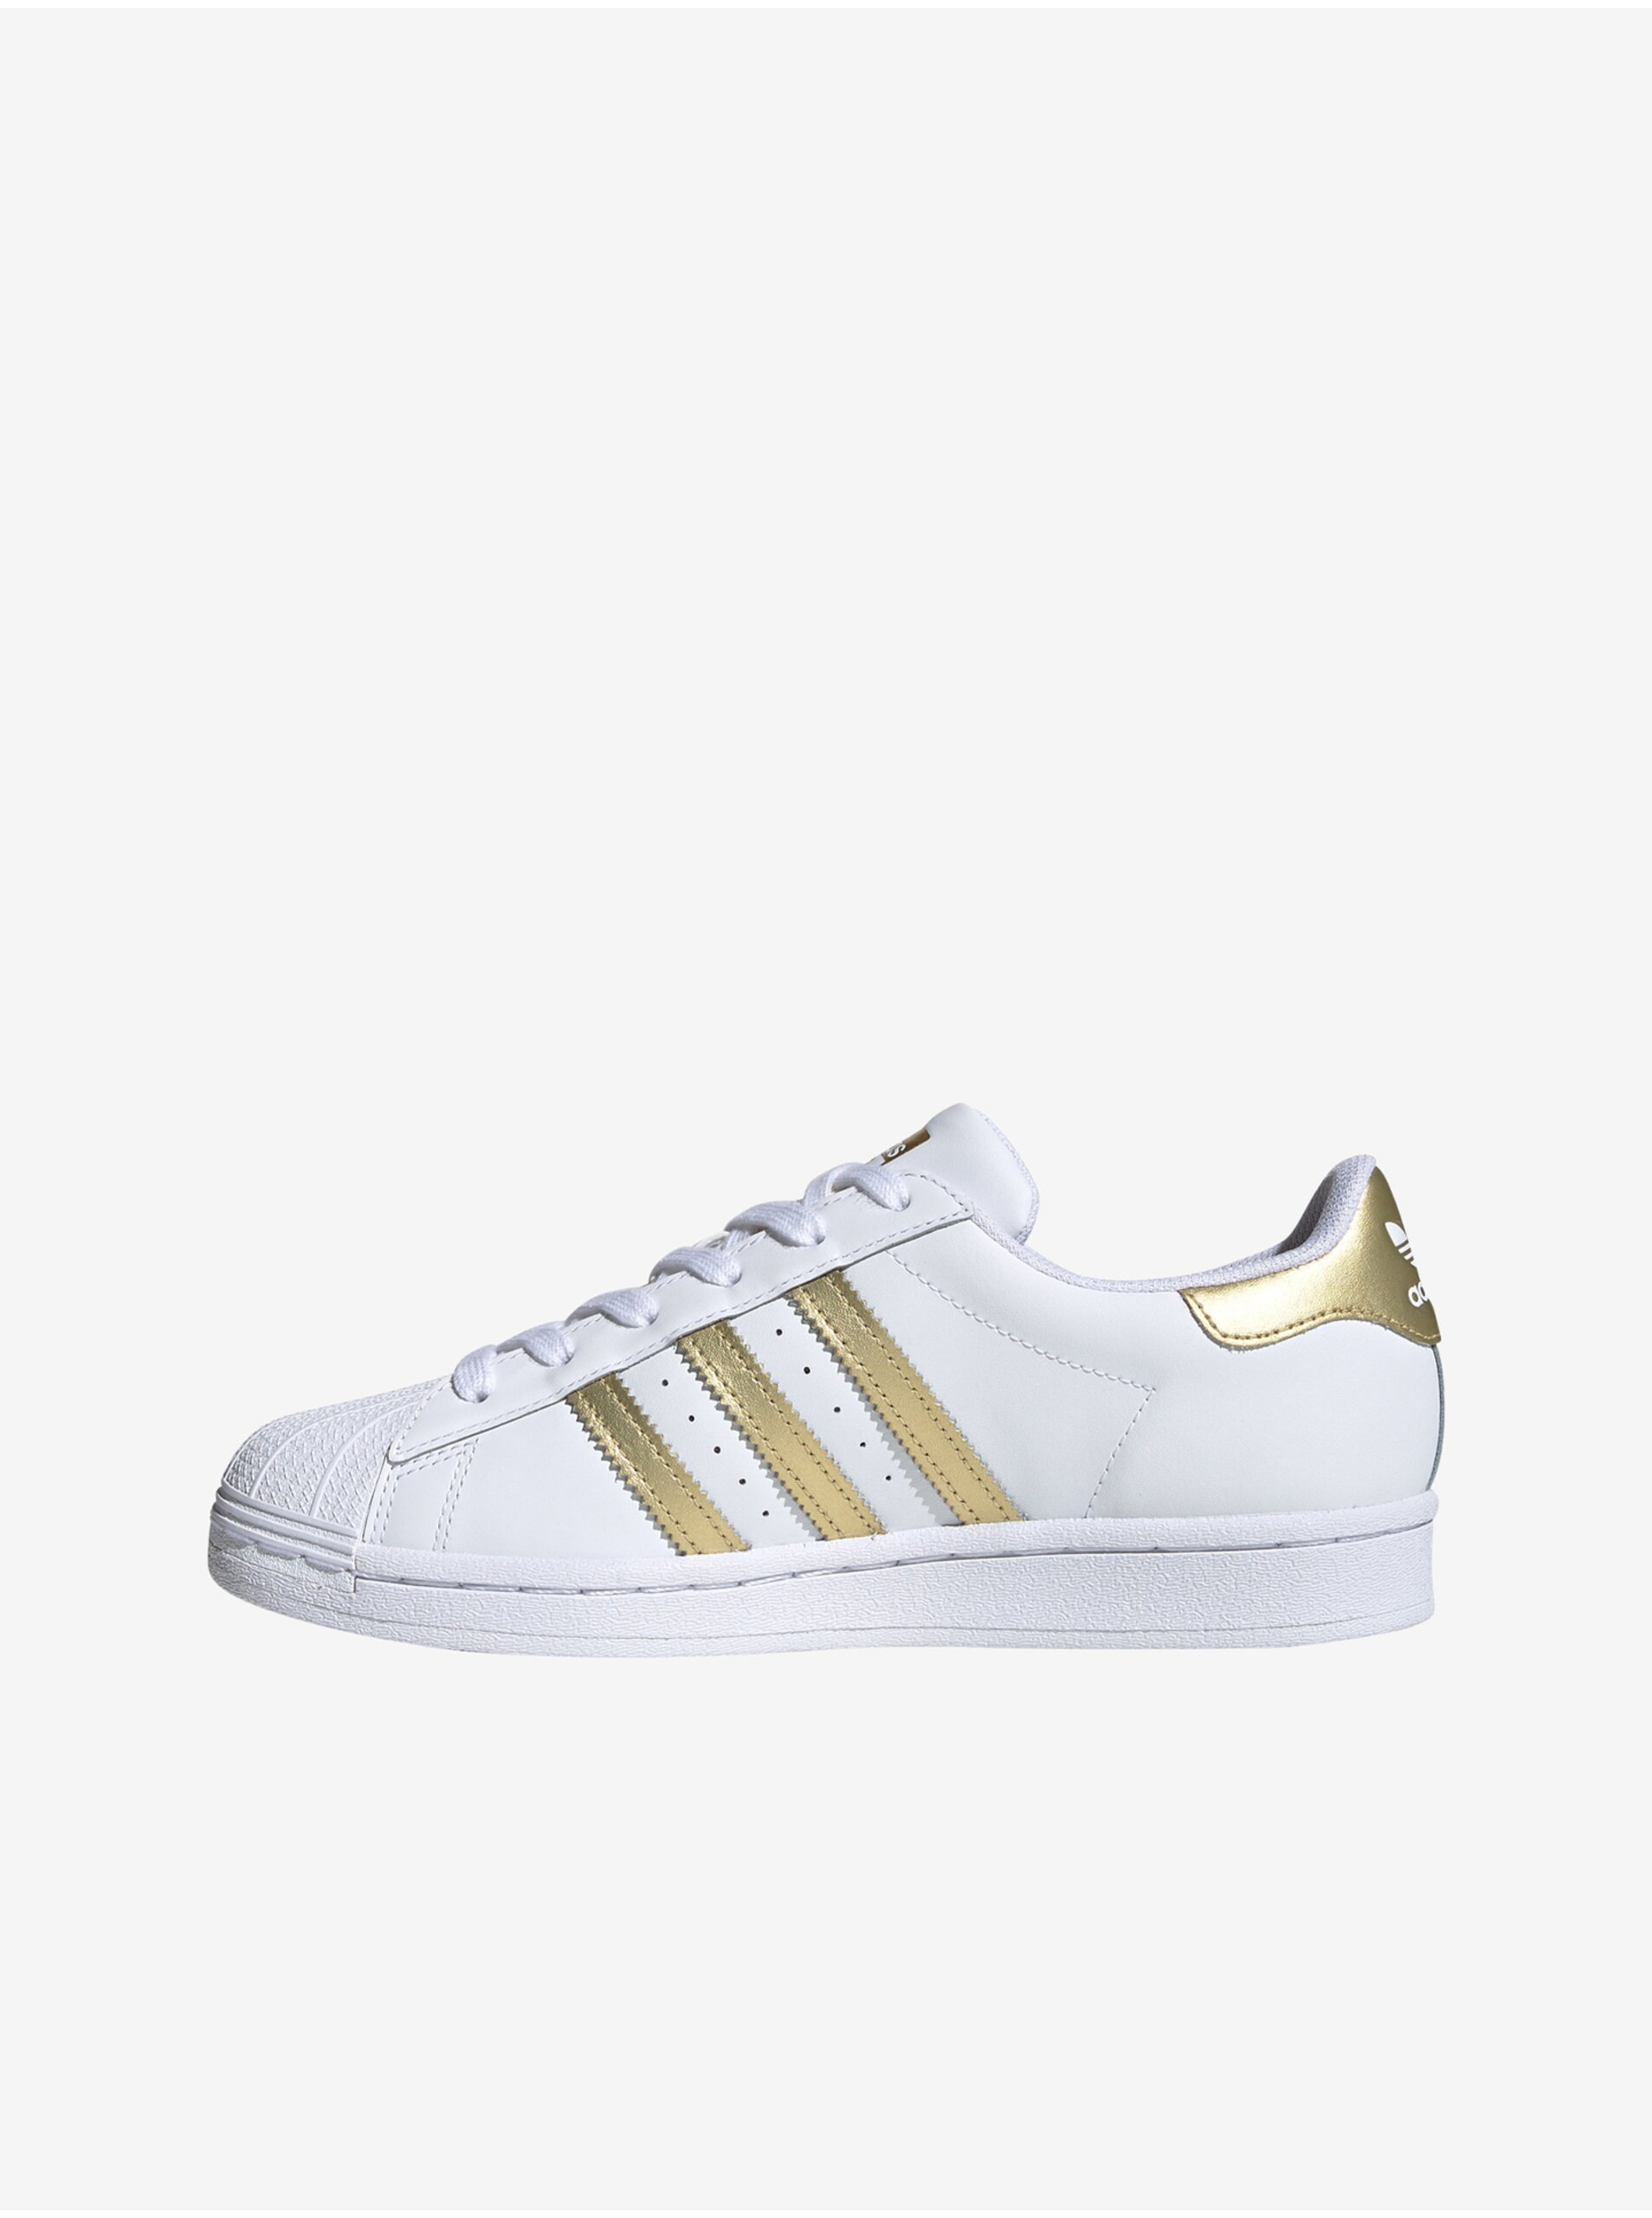 Lacno Zlato-biele dámske kožené tenisky adidas Originals Superstar